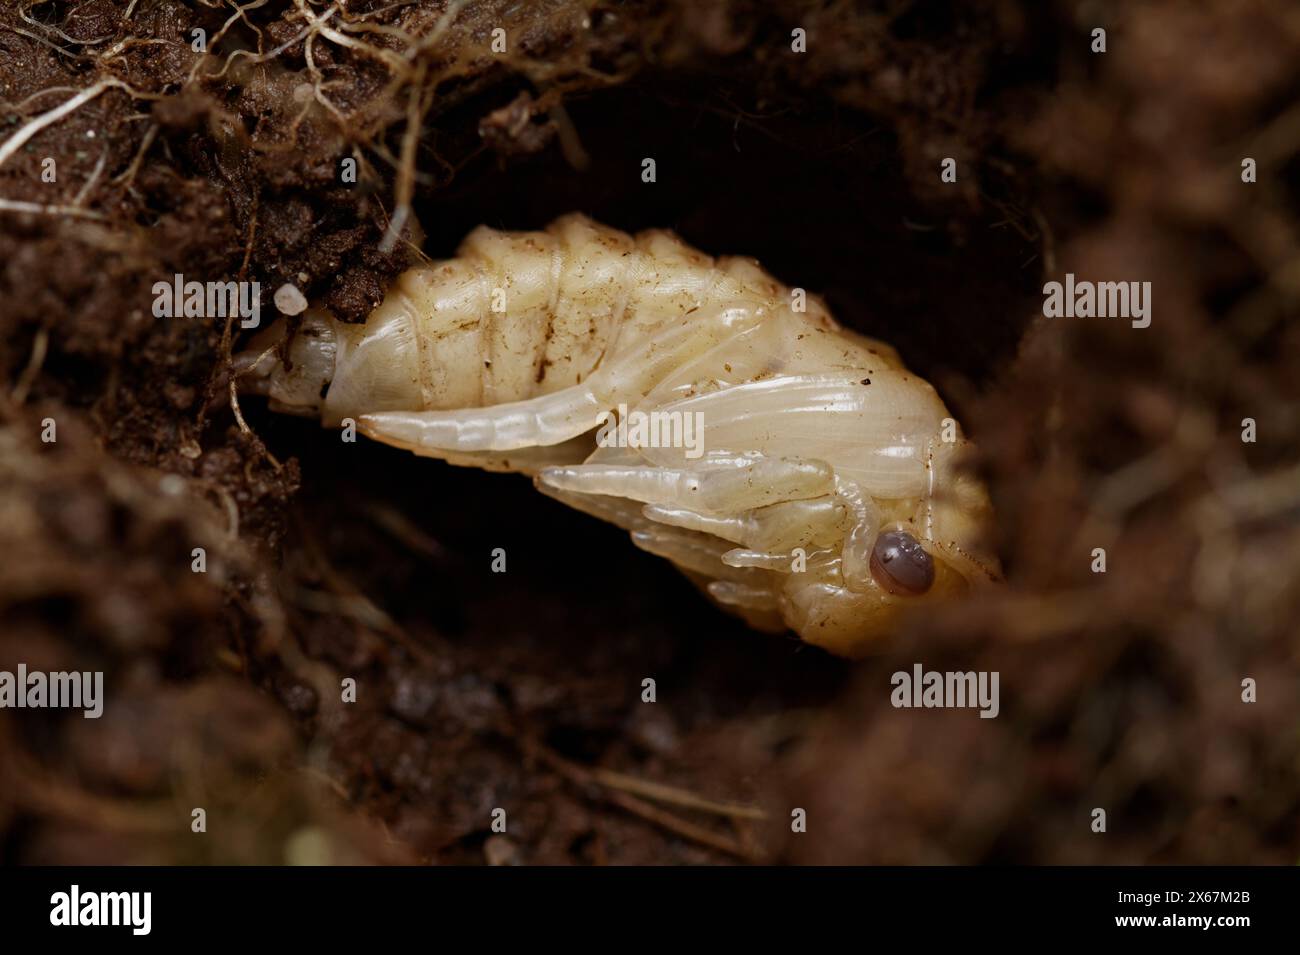 Puppe Eines großen Tauchkäfers, Dytiscus marginalis, im Boden begraben, New Forest UK Stockfoto